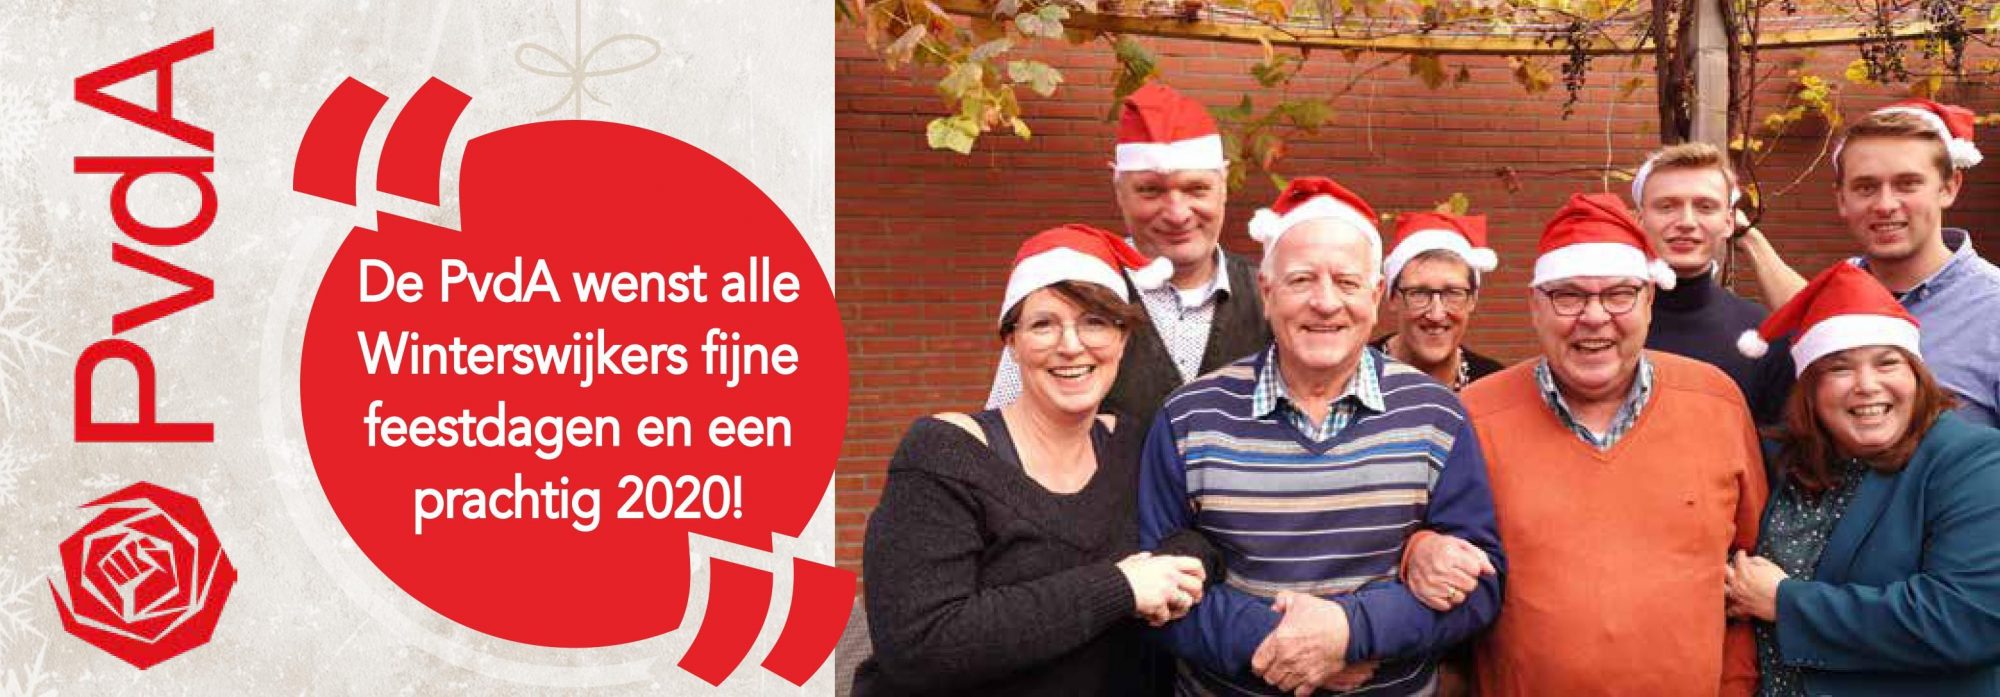 https://winterswijk.pvda.nl/nieuws/de-pvda-wenst-alle-winterswijkers-fijne-feestdagen-en-een-prachtig-2020/